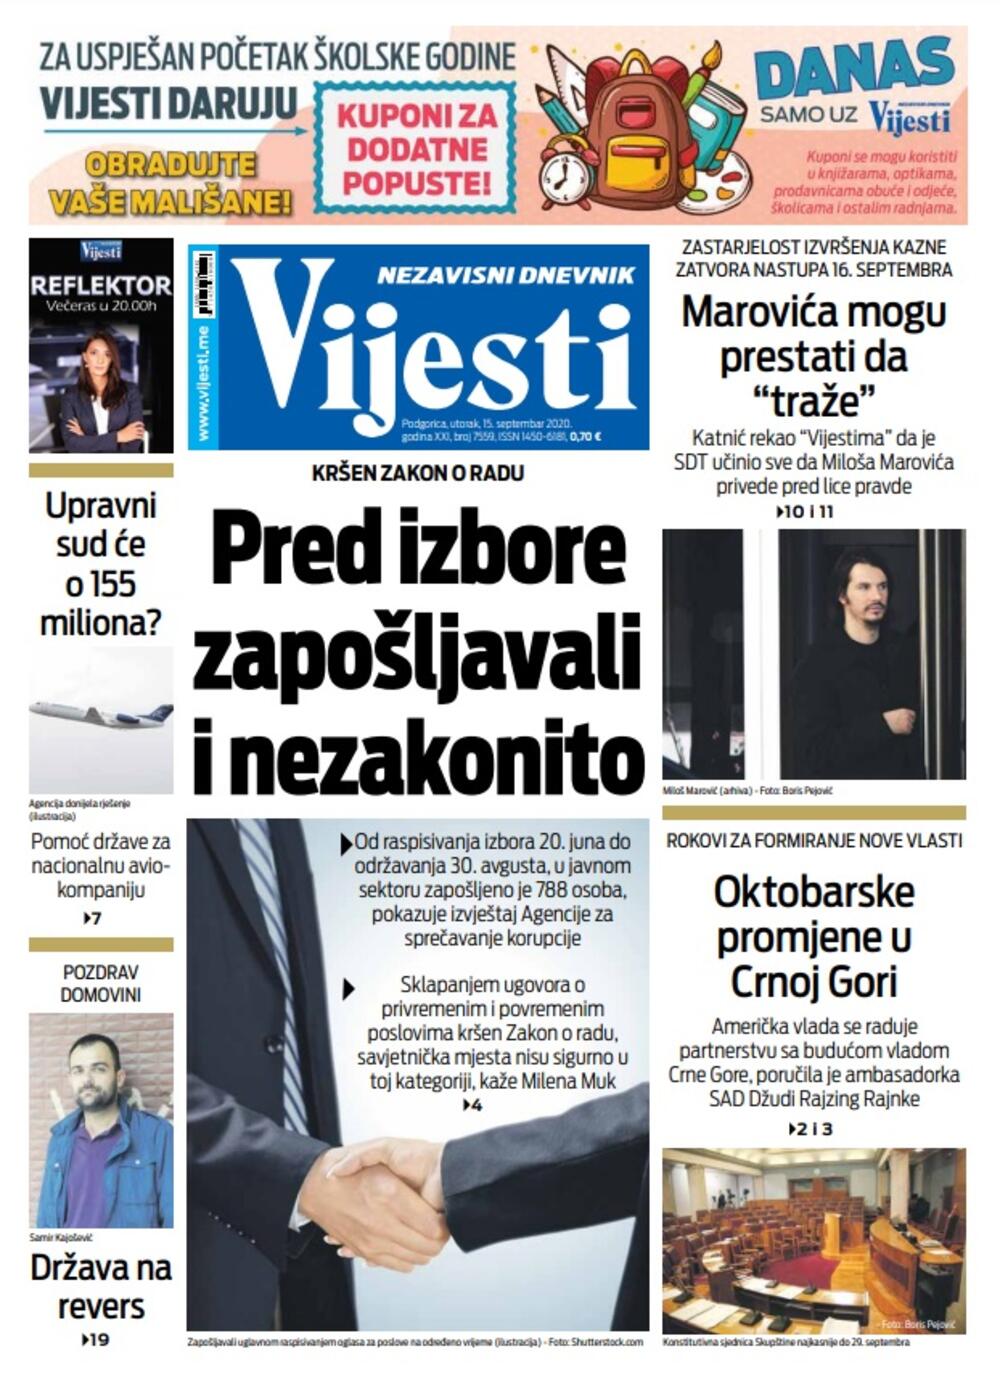 Naslovna strana "Vijesti" za utorak 15. septembar 2020. godine, Foto: Vijesti